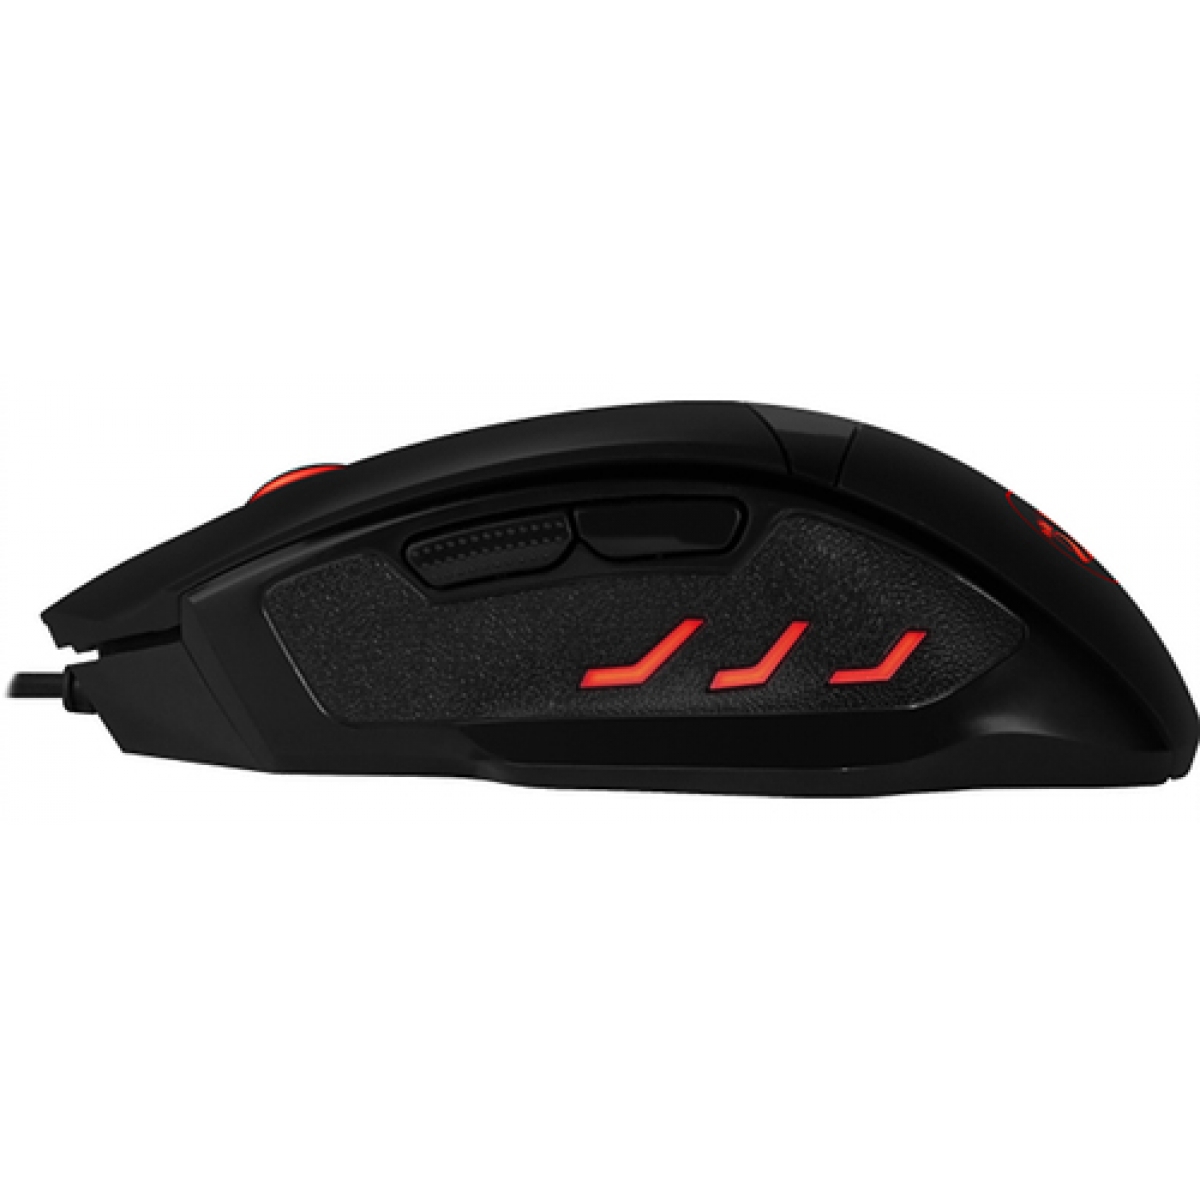 Mouse Gamer Redragon Phaser M609 RGB, 3200 DPI, 6 Botões, Black